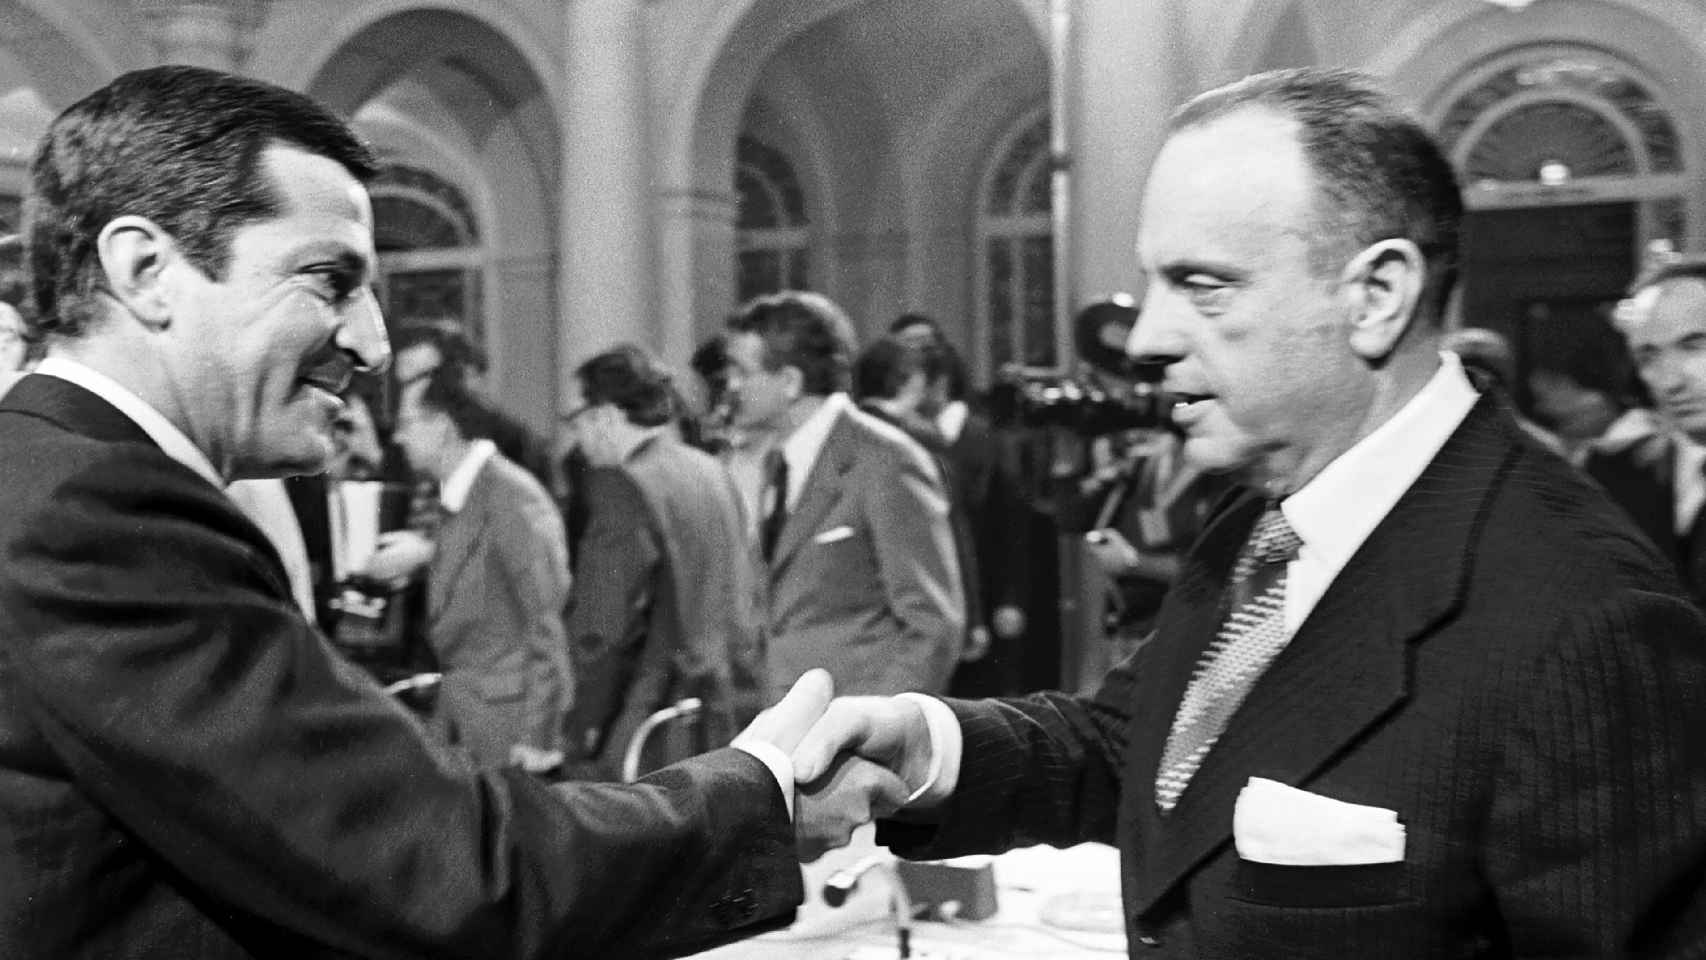 25 DE OCTUBRE DE 1978: (I-D) El presidente del Gobierno Adolfo Suárez (UCD), y el ex-ministro de Interior Manuel Fraga Iribarne (Alianza Popular), se estrechan la mano tras la firma de los Pactos de la Moncloa